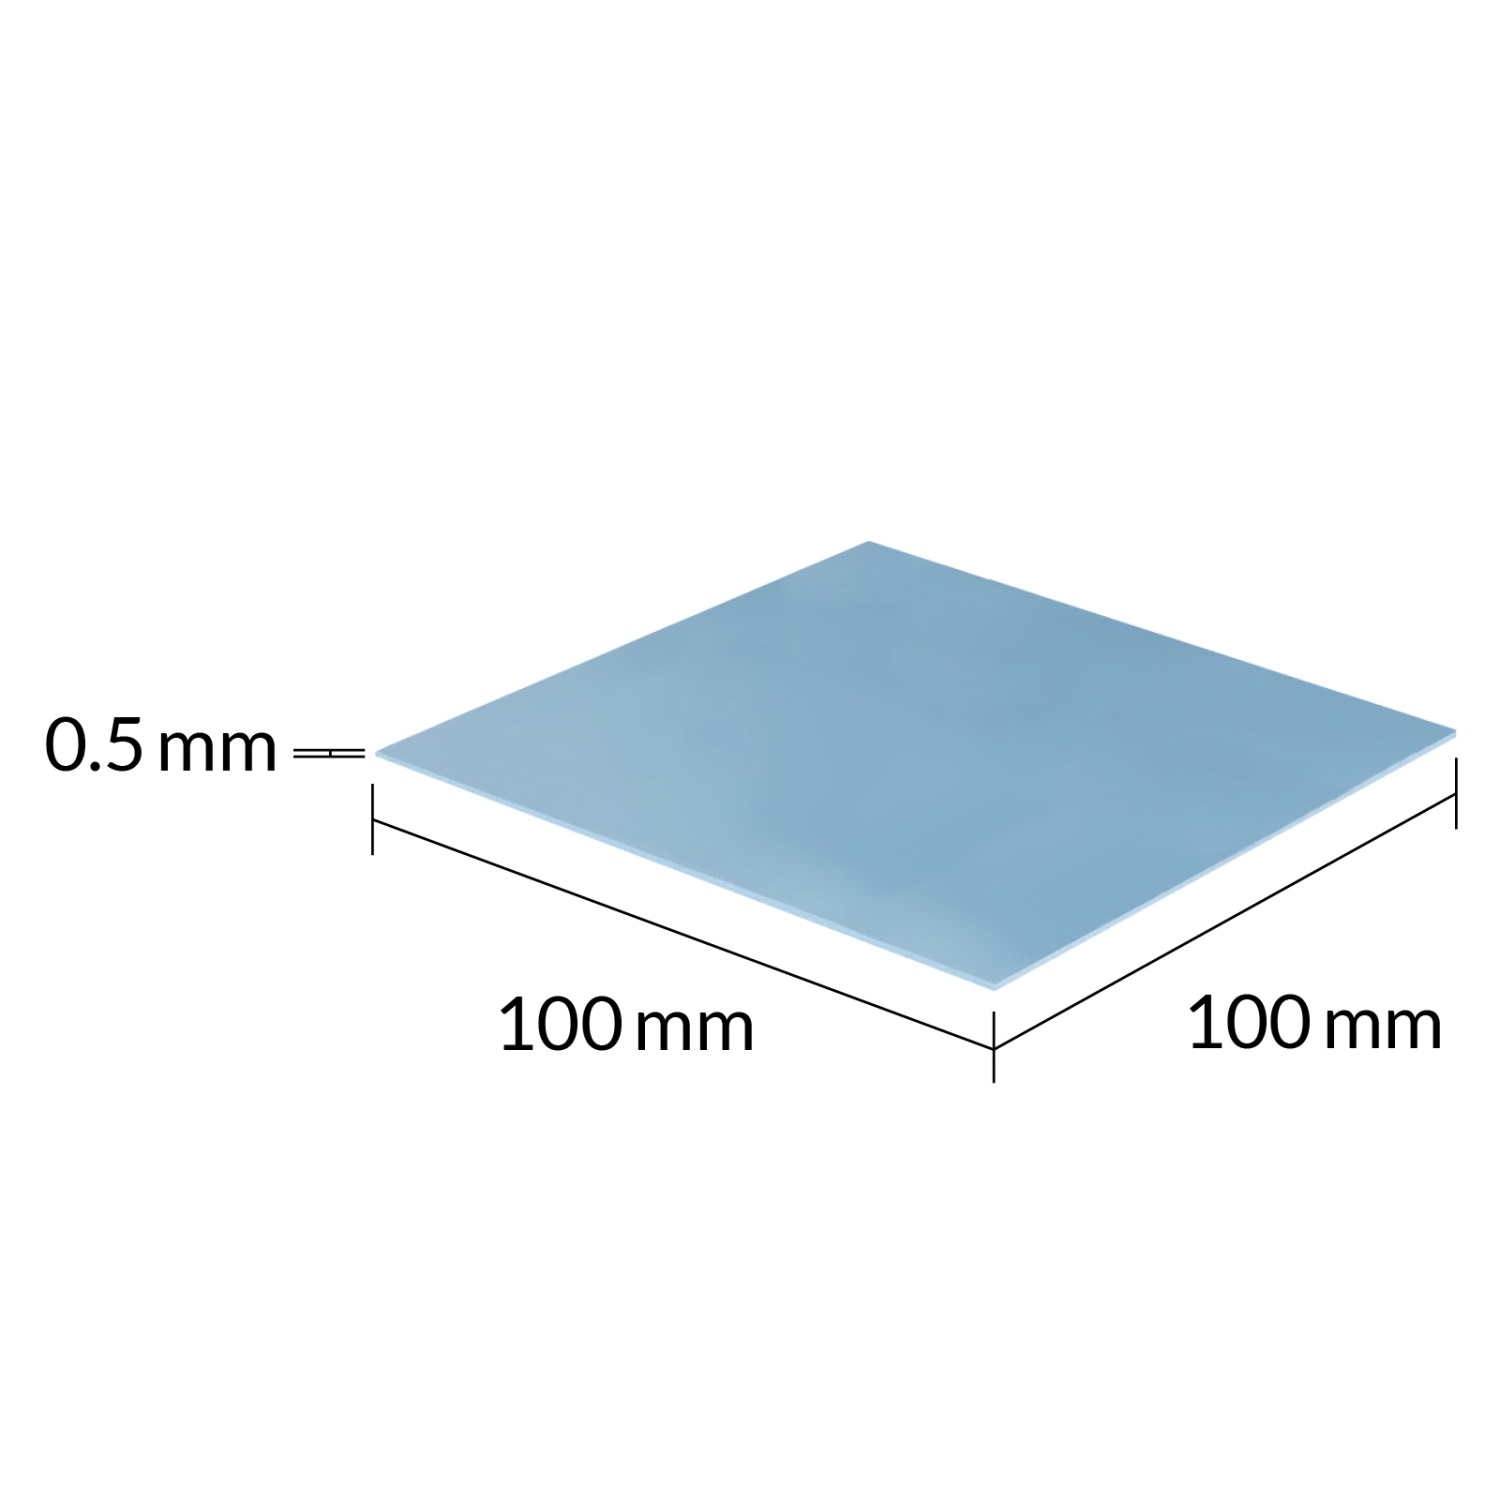 ARCTIC Thermal pad TP-3 100x100mm, 0.5mm (Premium)